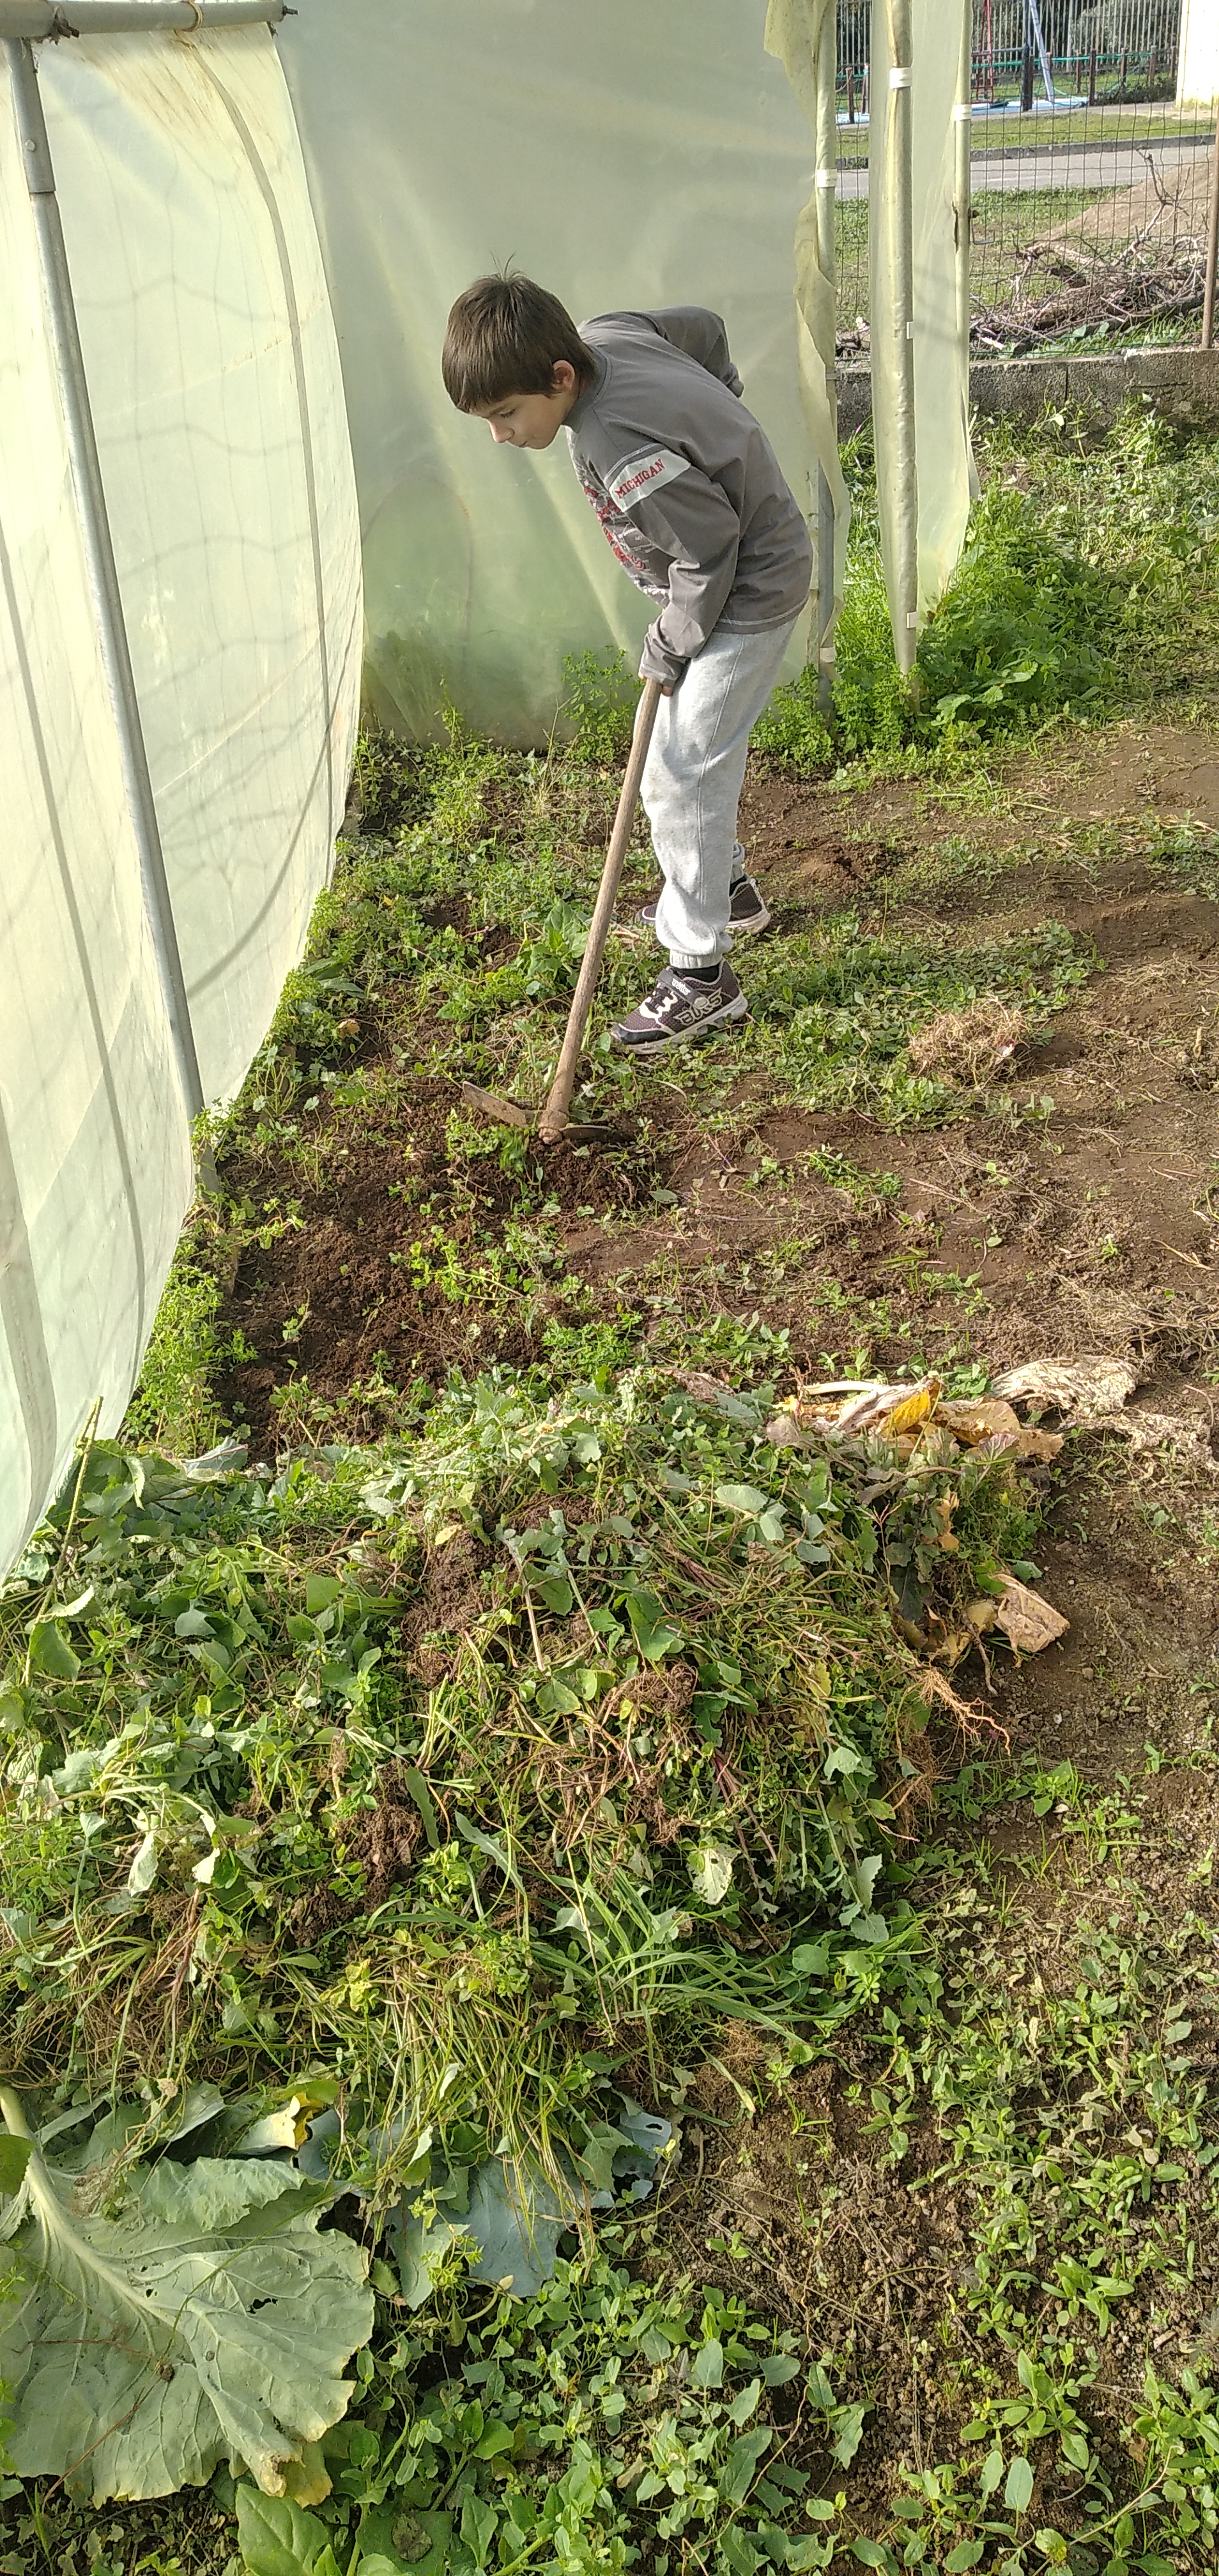 Limpeza do terreno da estufa: retirar as ervas daninhas necessárias para o biocompostor.
Também foi feita a limpeza inicial na horta exterior à estufa.